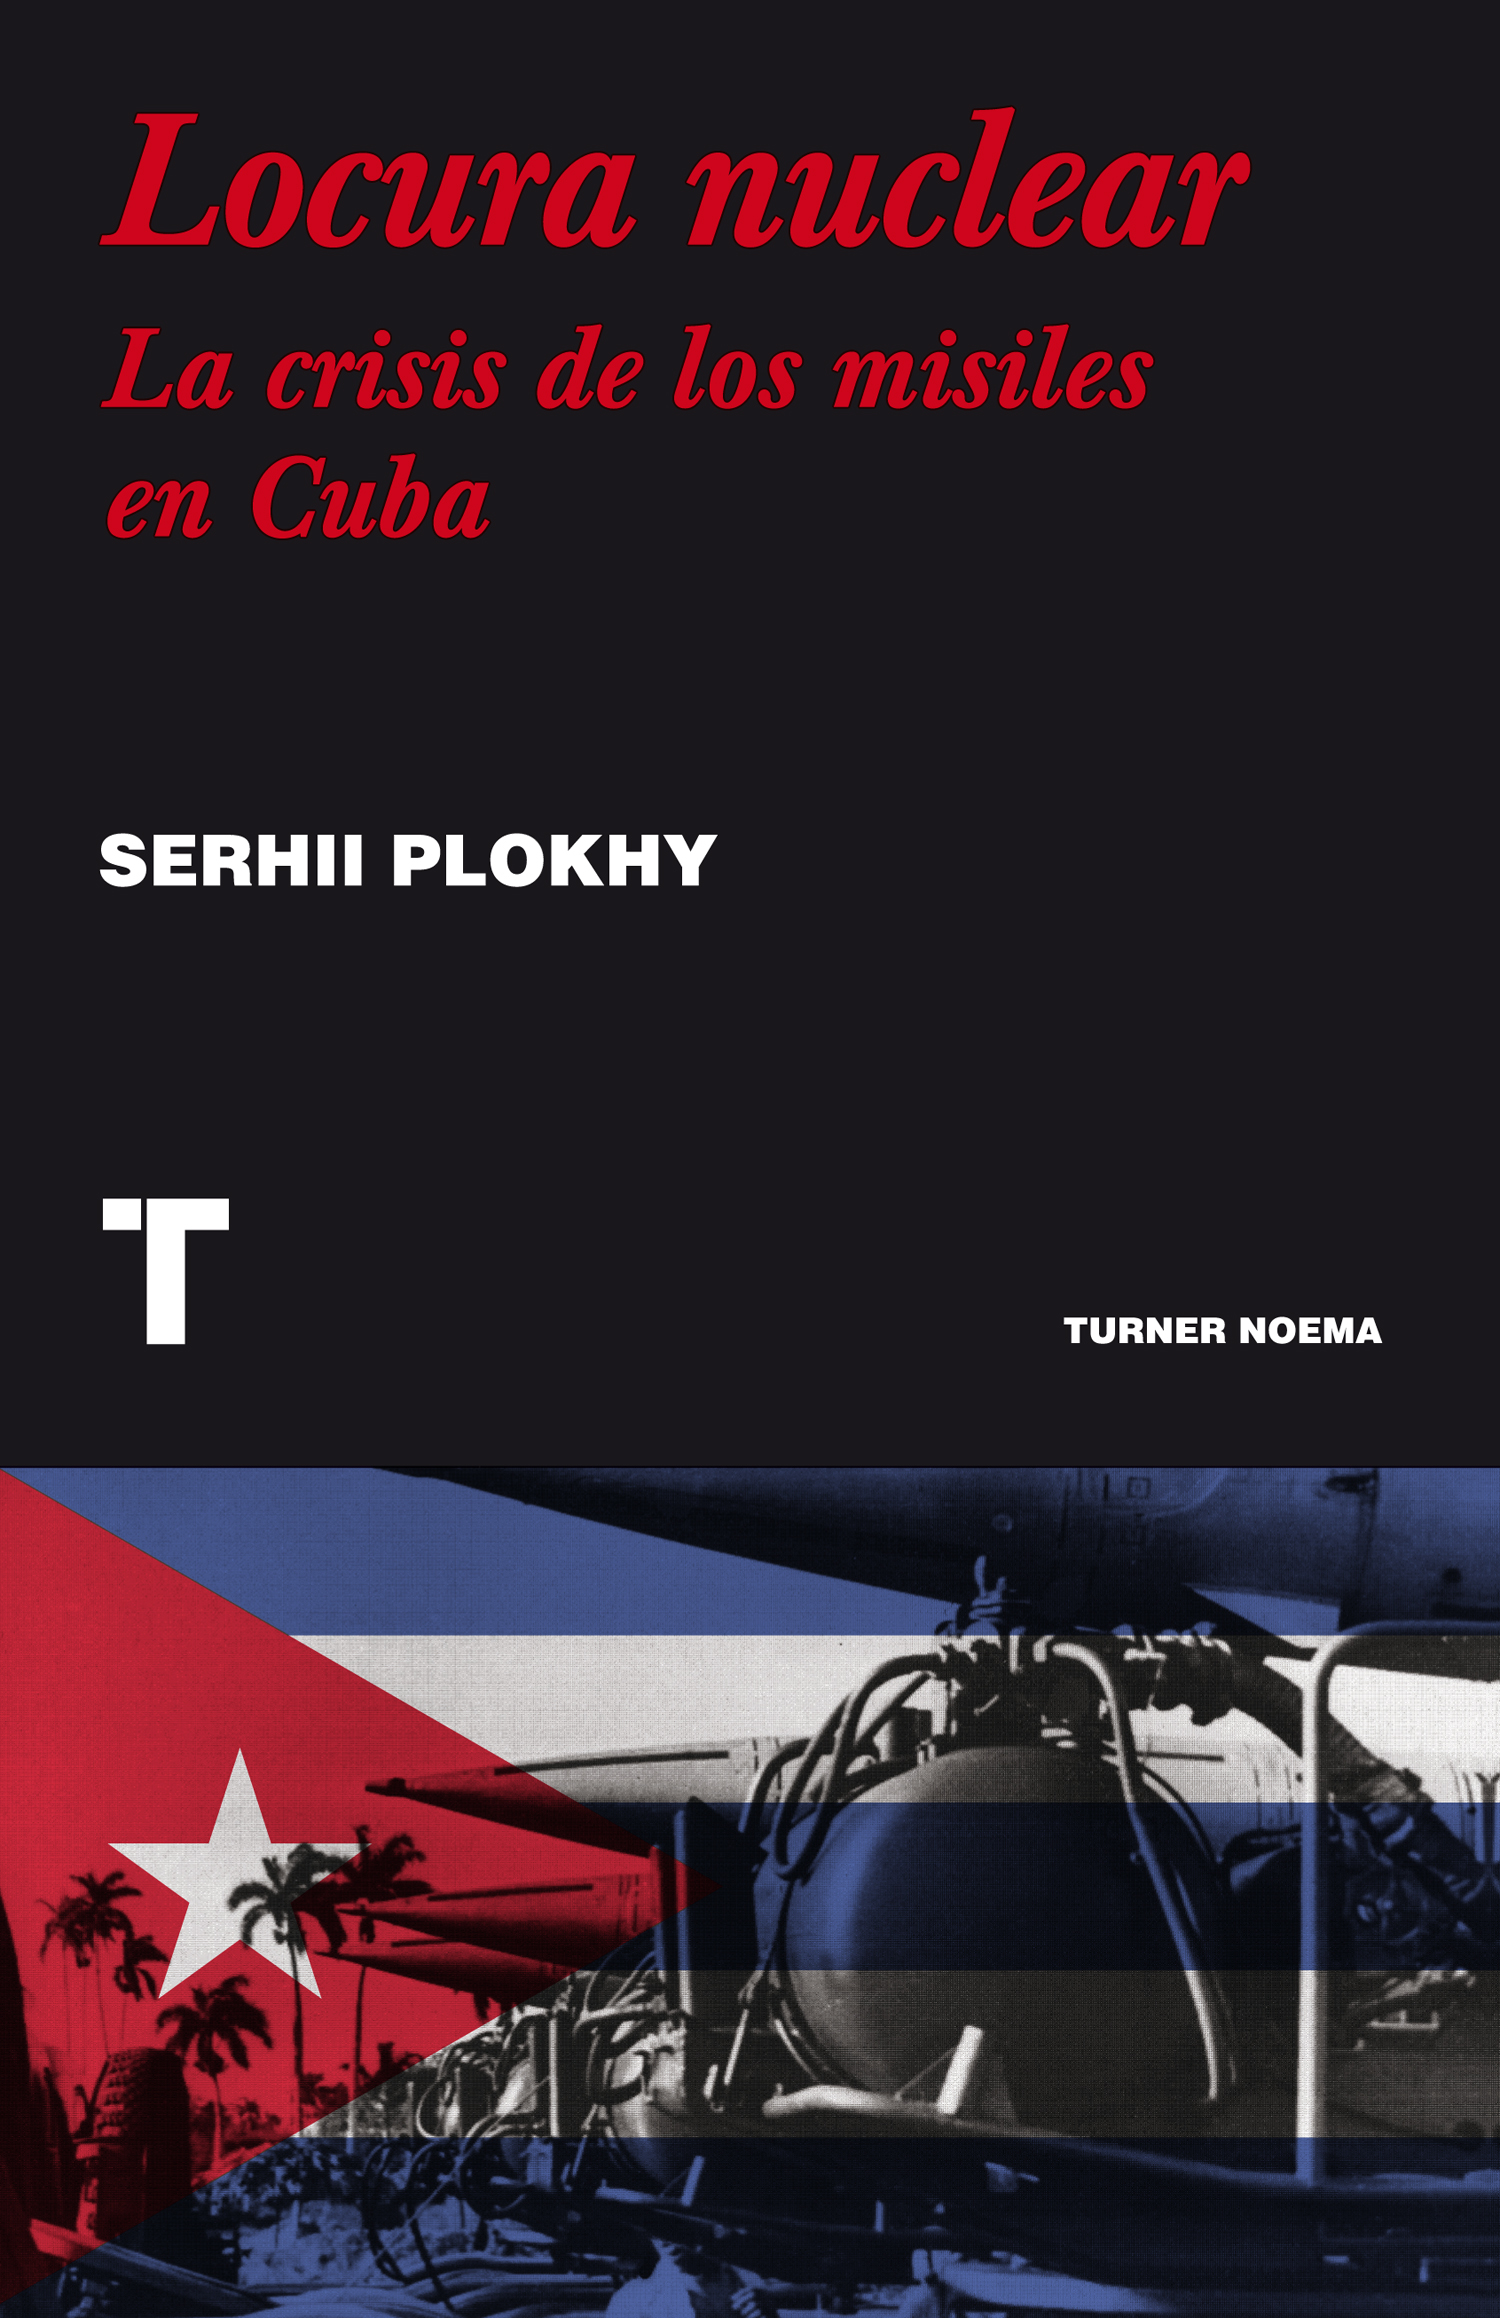 Locura nuclear. La crisis de los misiles en Cuba